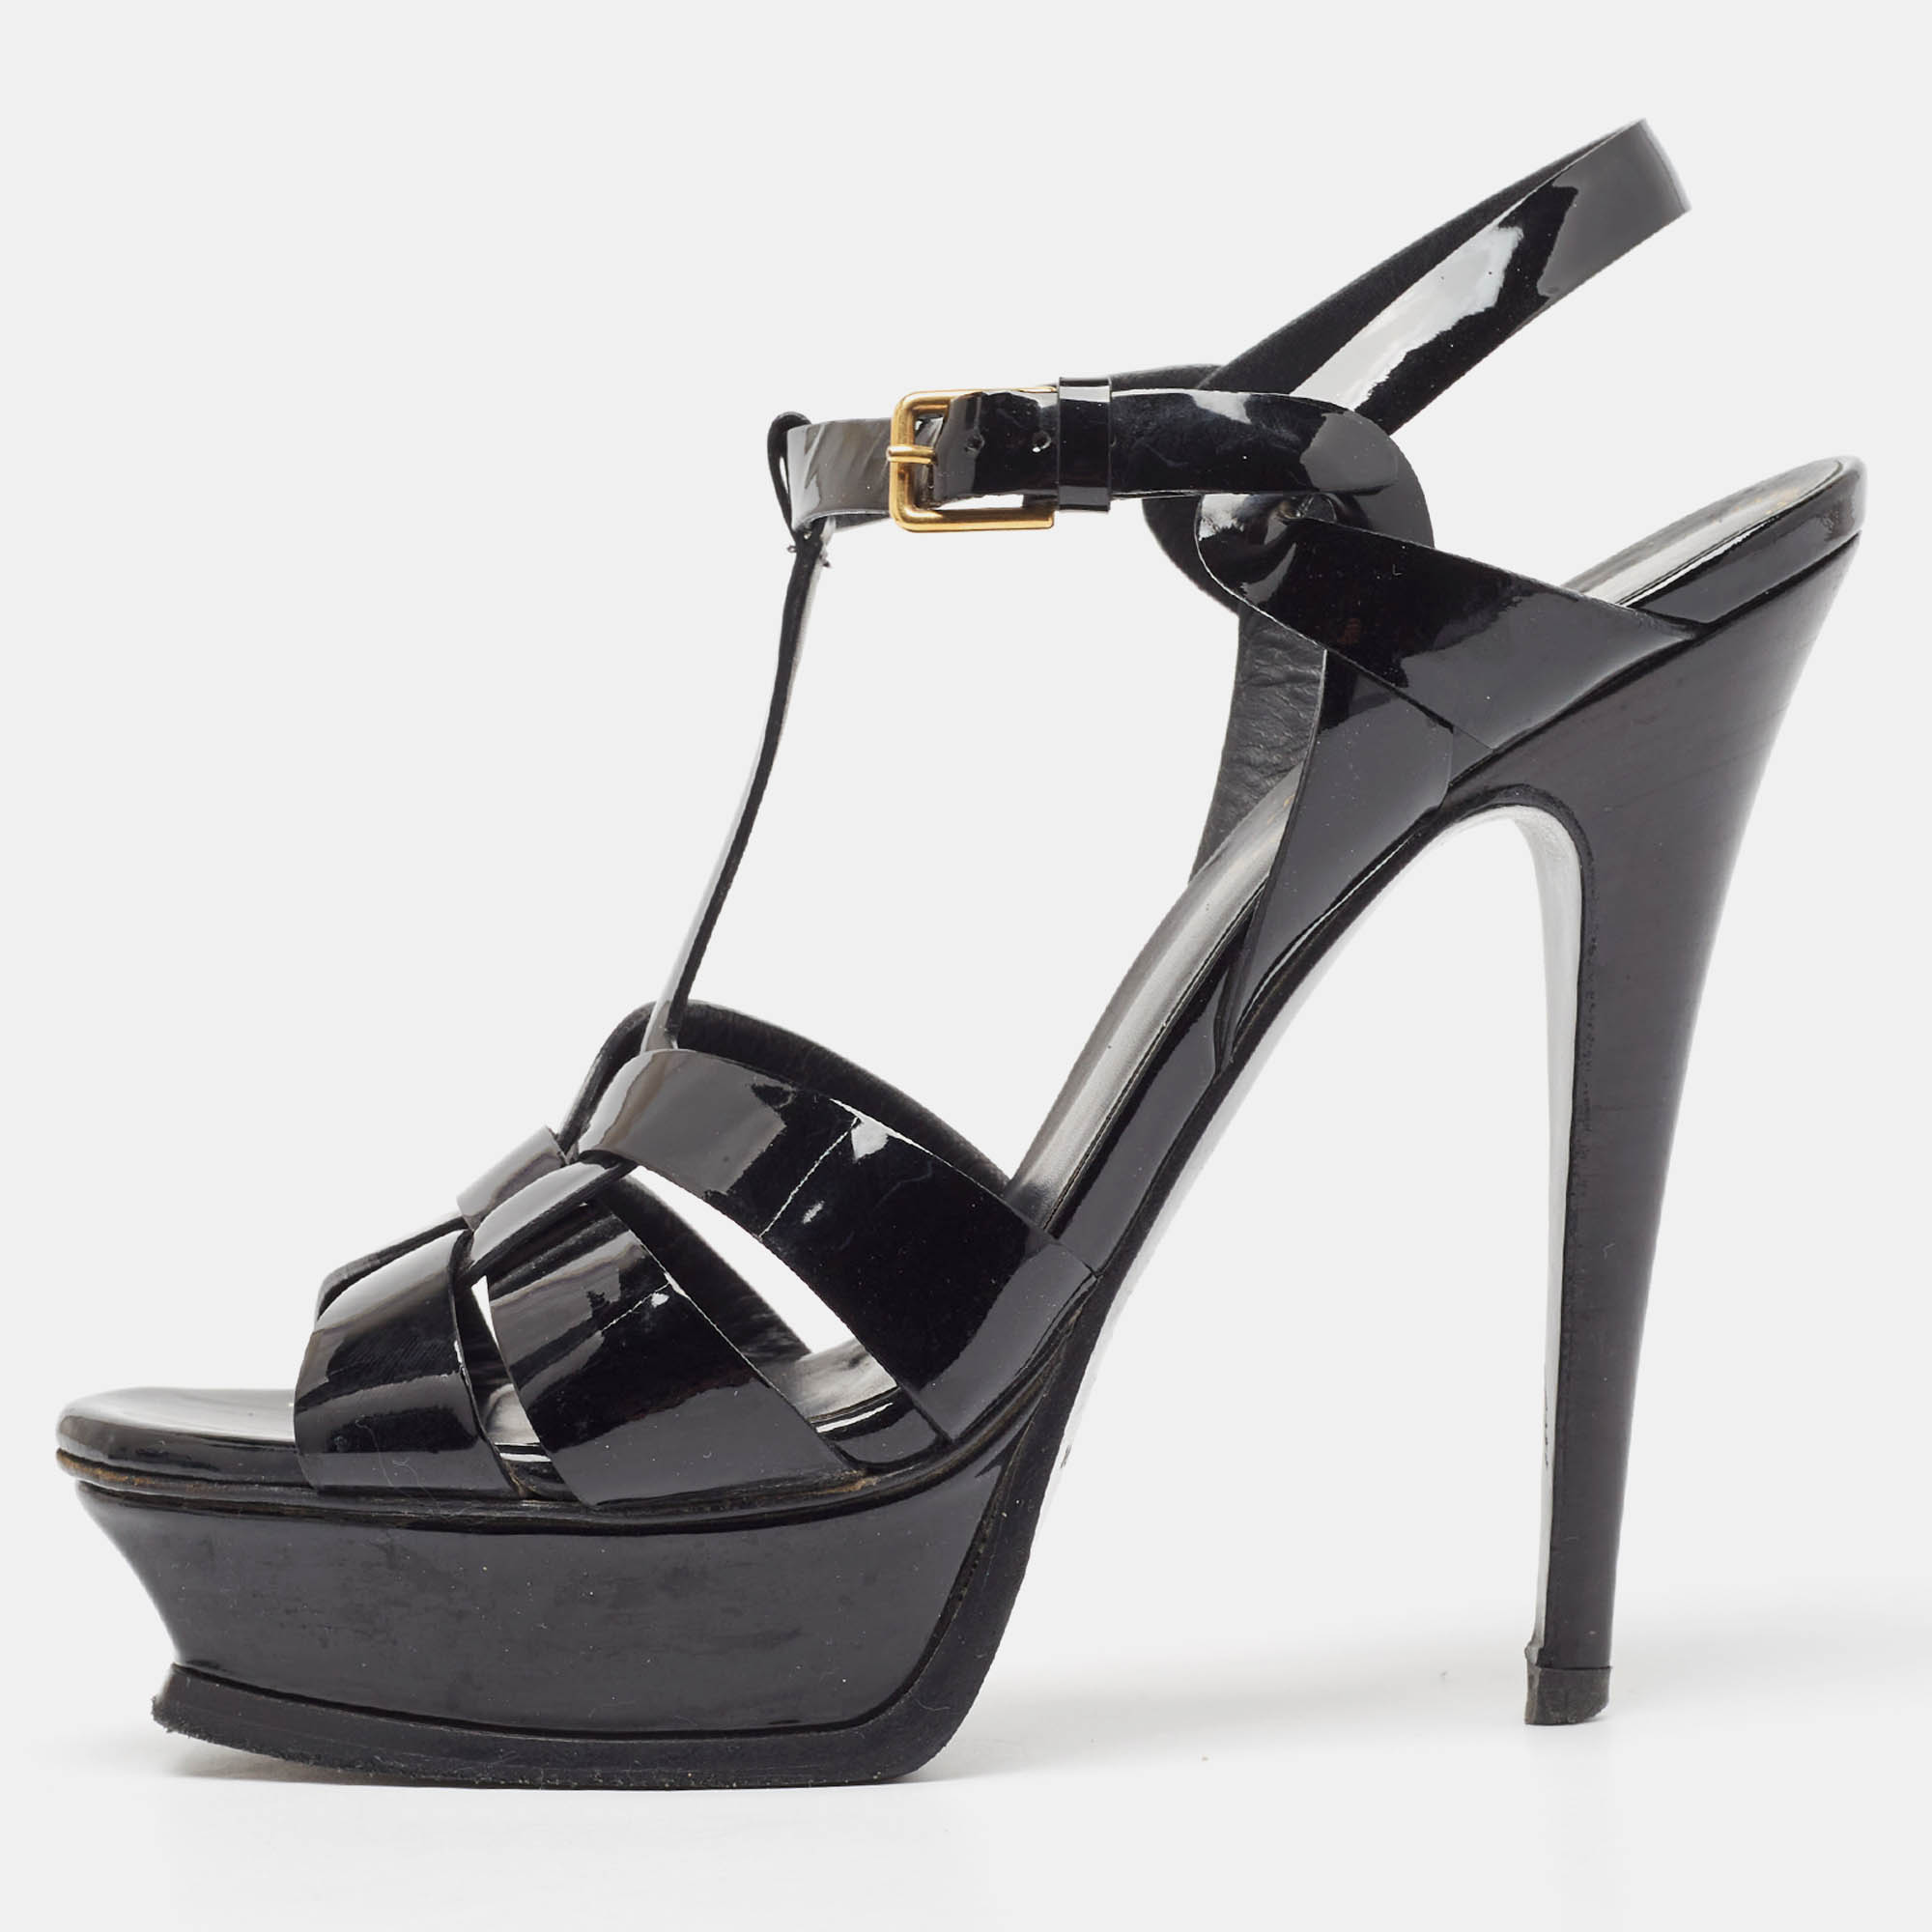 Yves saint laurent black patent leather tribute platform sandals size 37